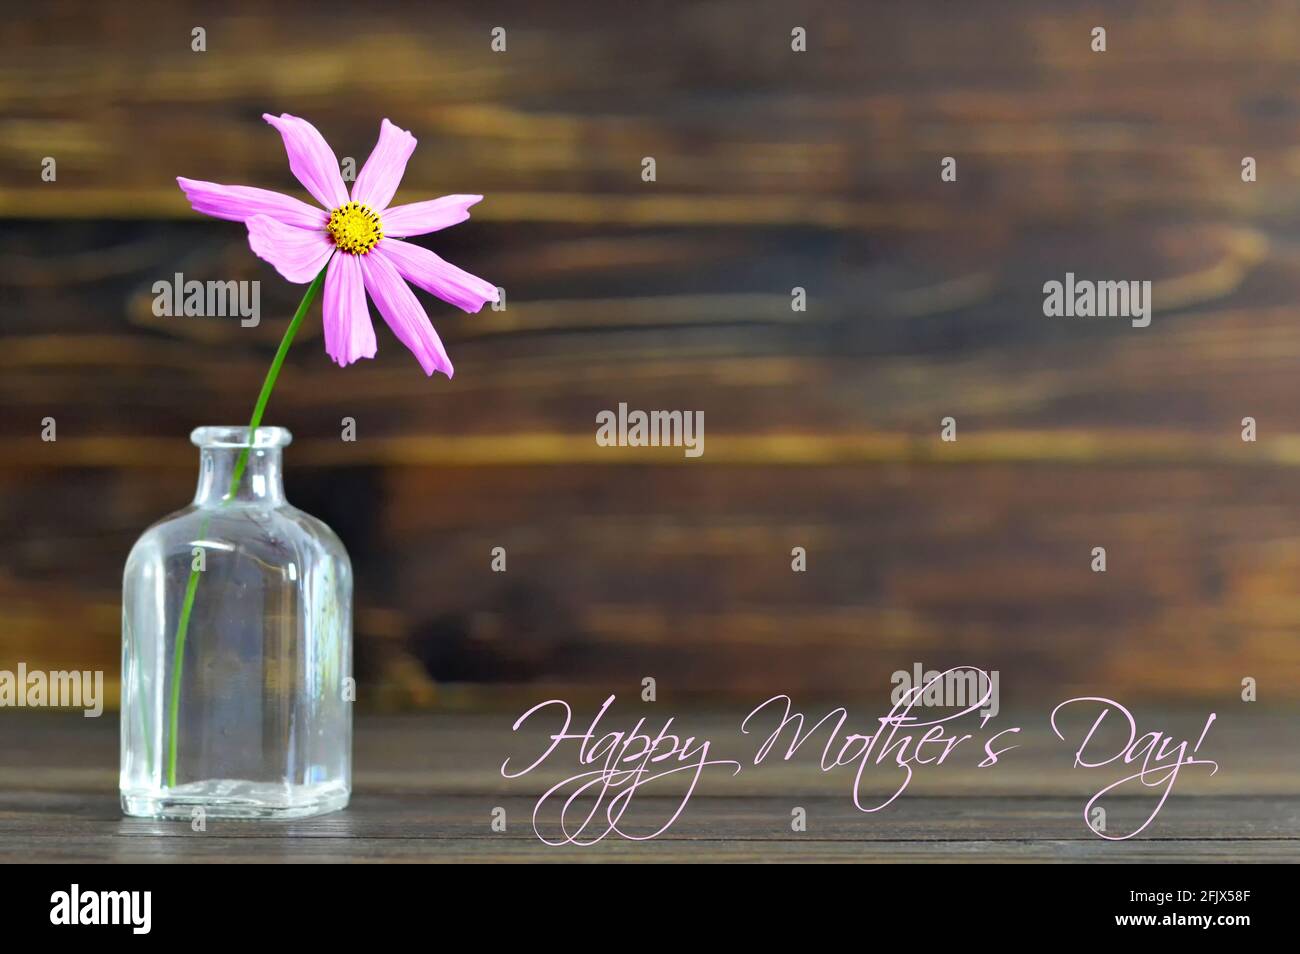 Happy Mothers carta giorno con fiore singolo in vaso Foto Stock